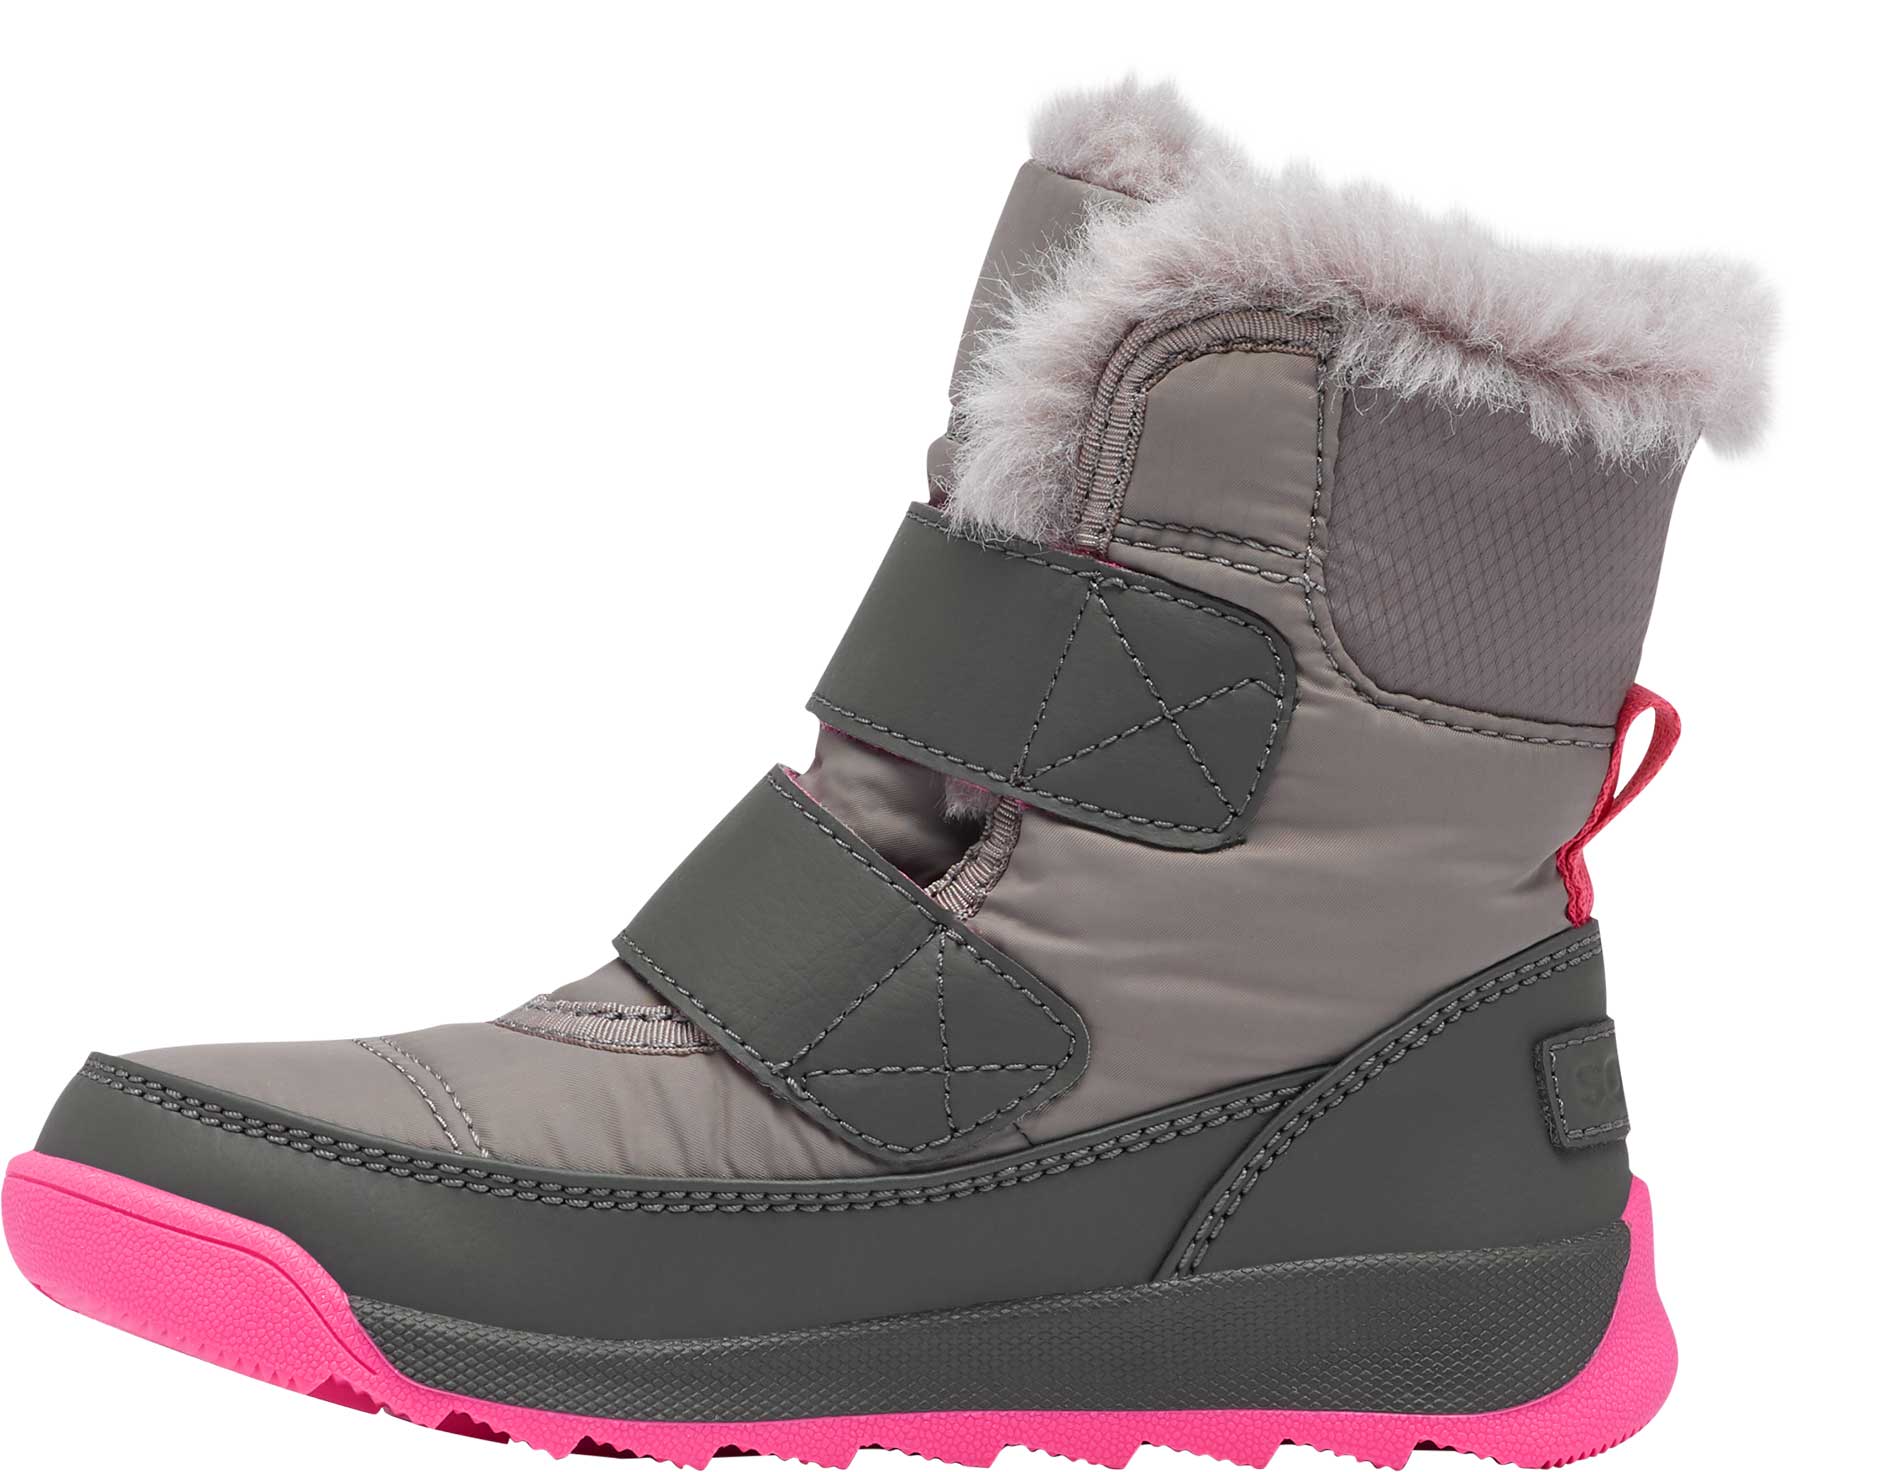 Kids’ unisex winter footwear